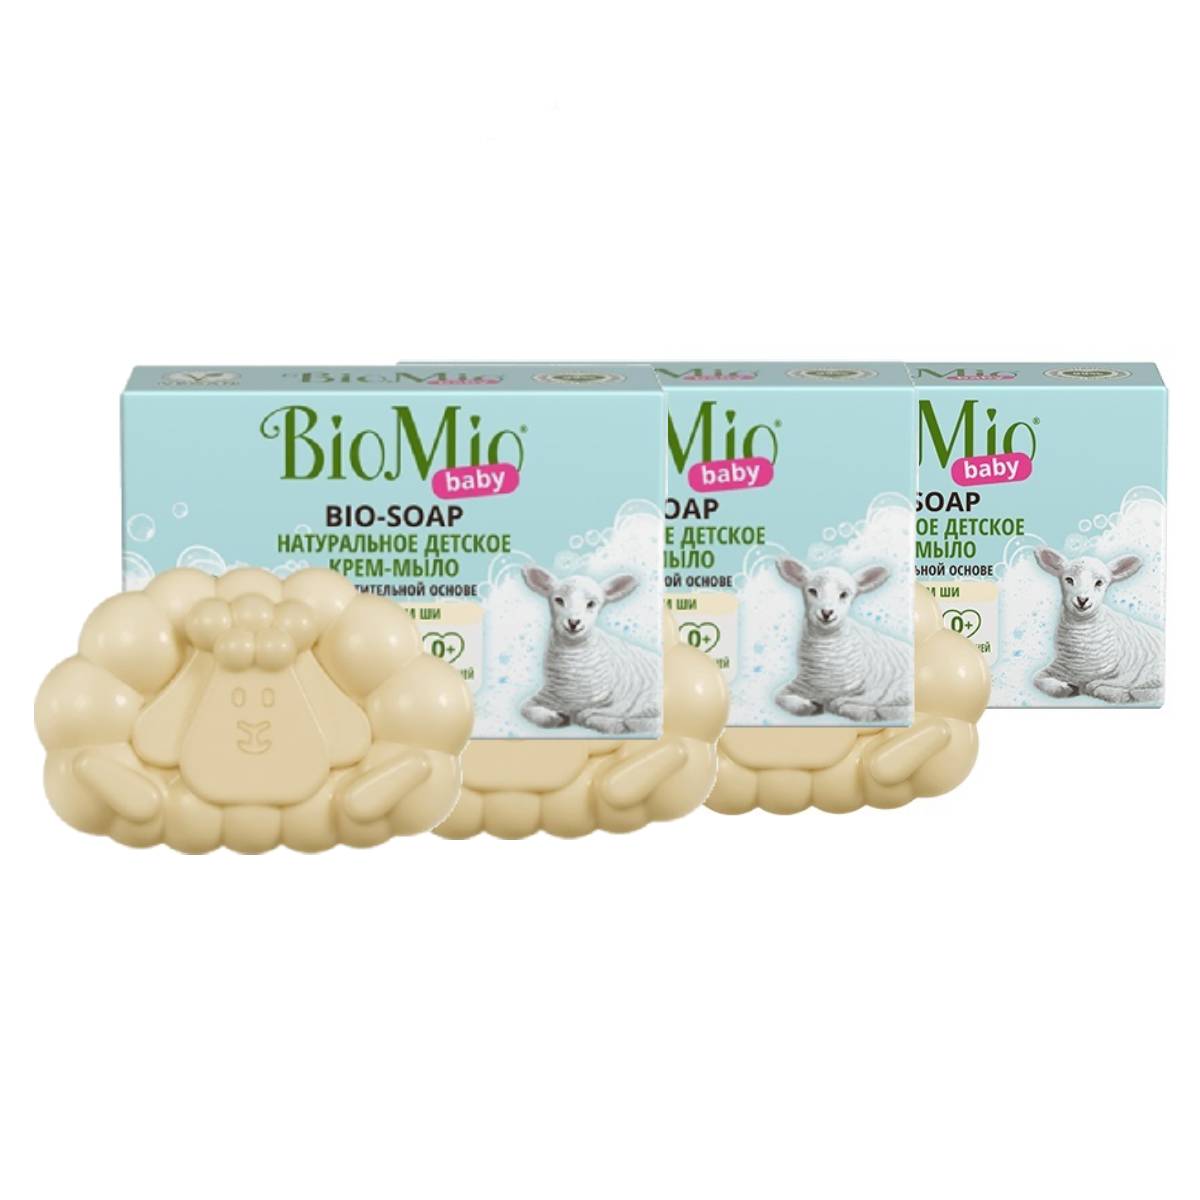 BioMio Натуральное детское крем-мыло с маслом ши, 3 х 90 г (BioMio, Мыло) цена и фото